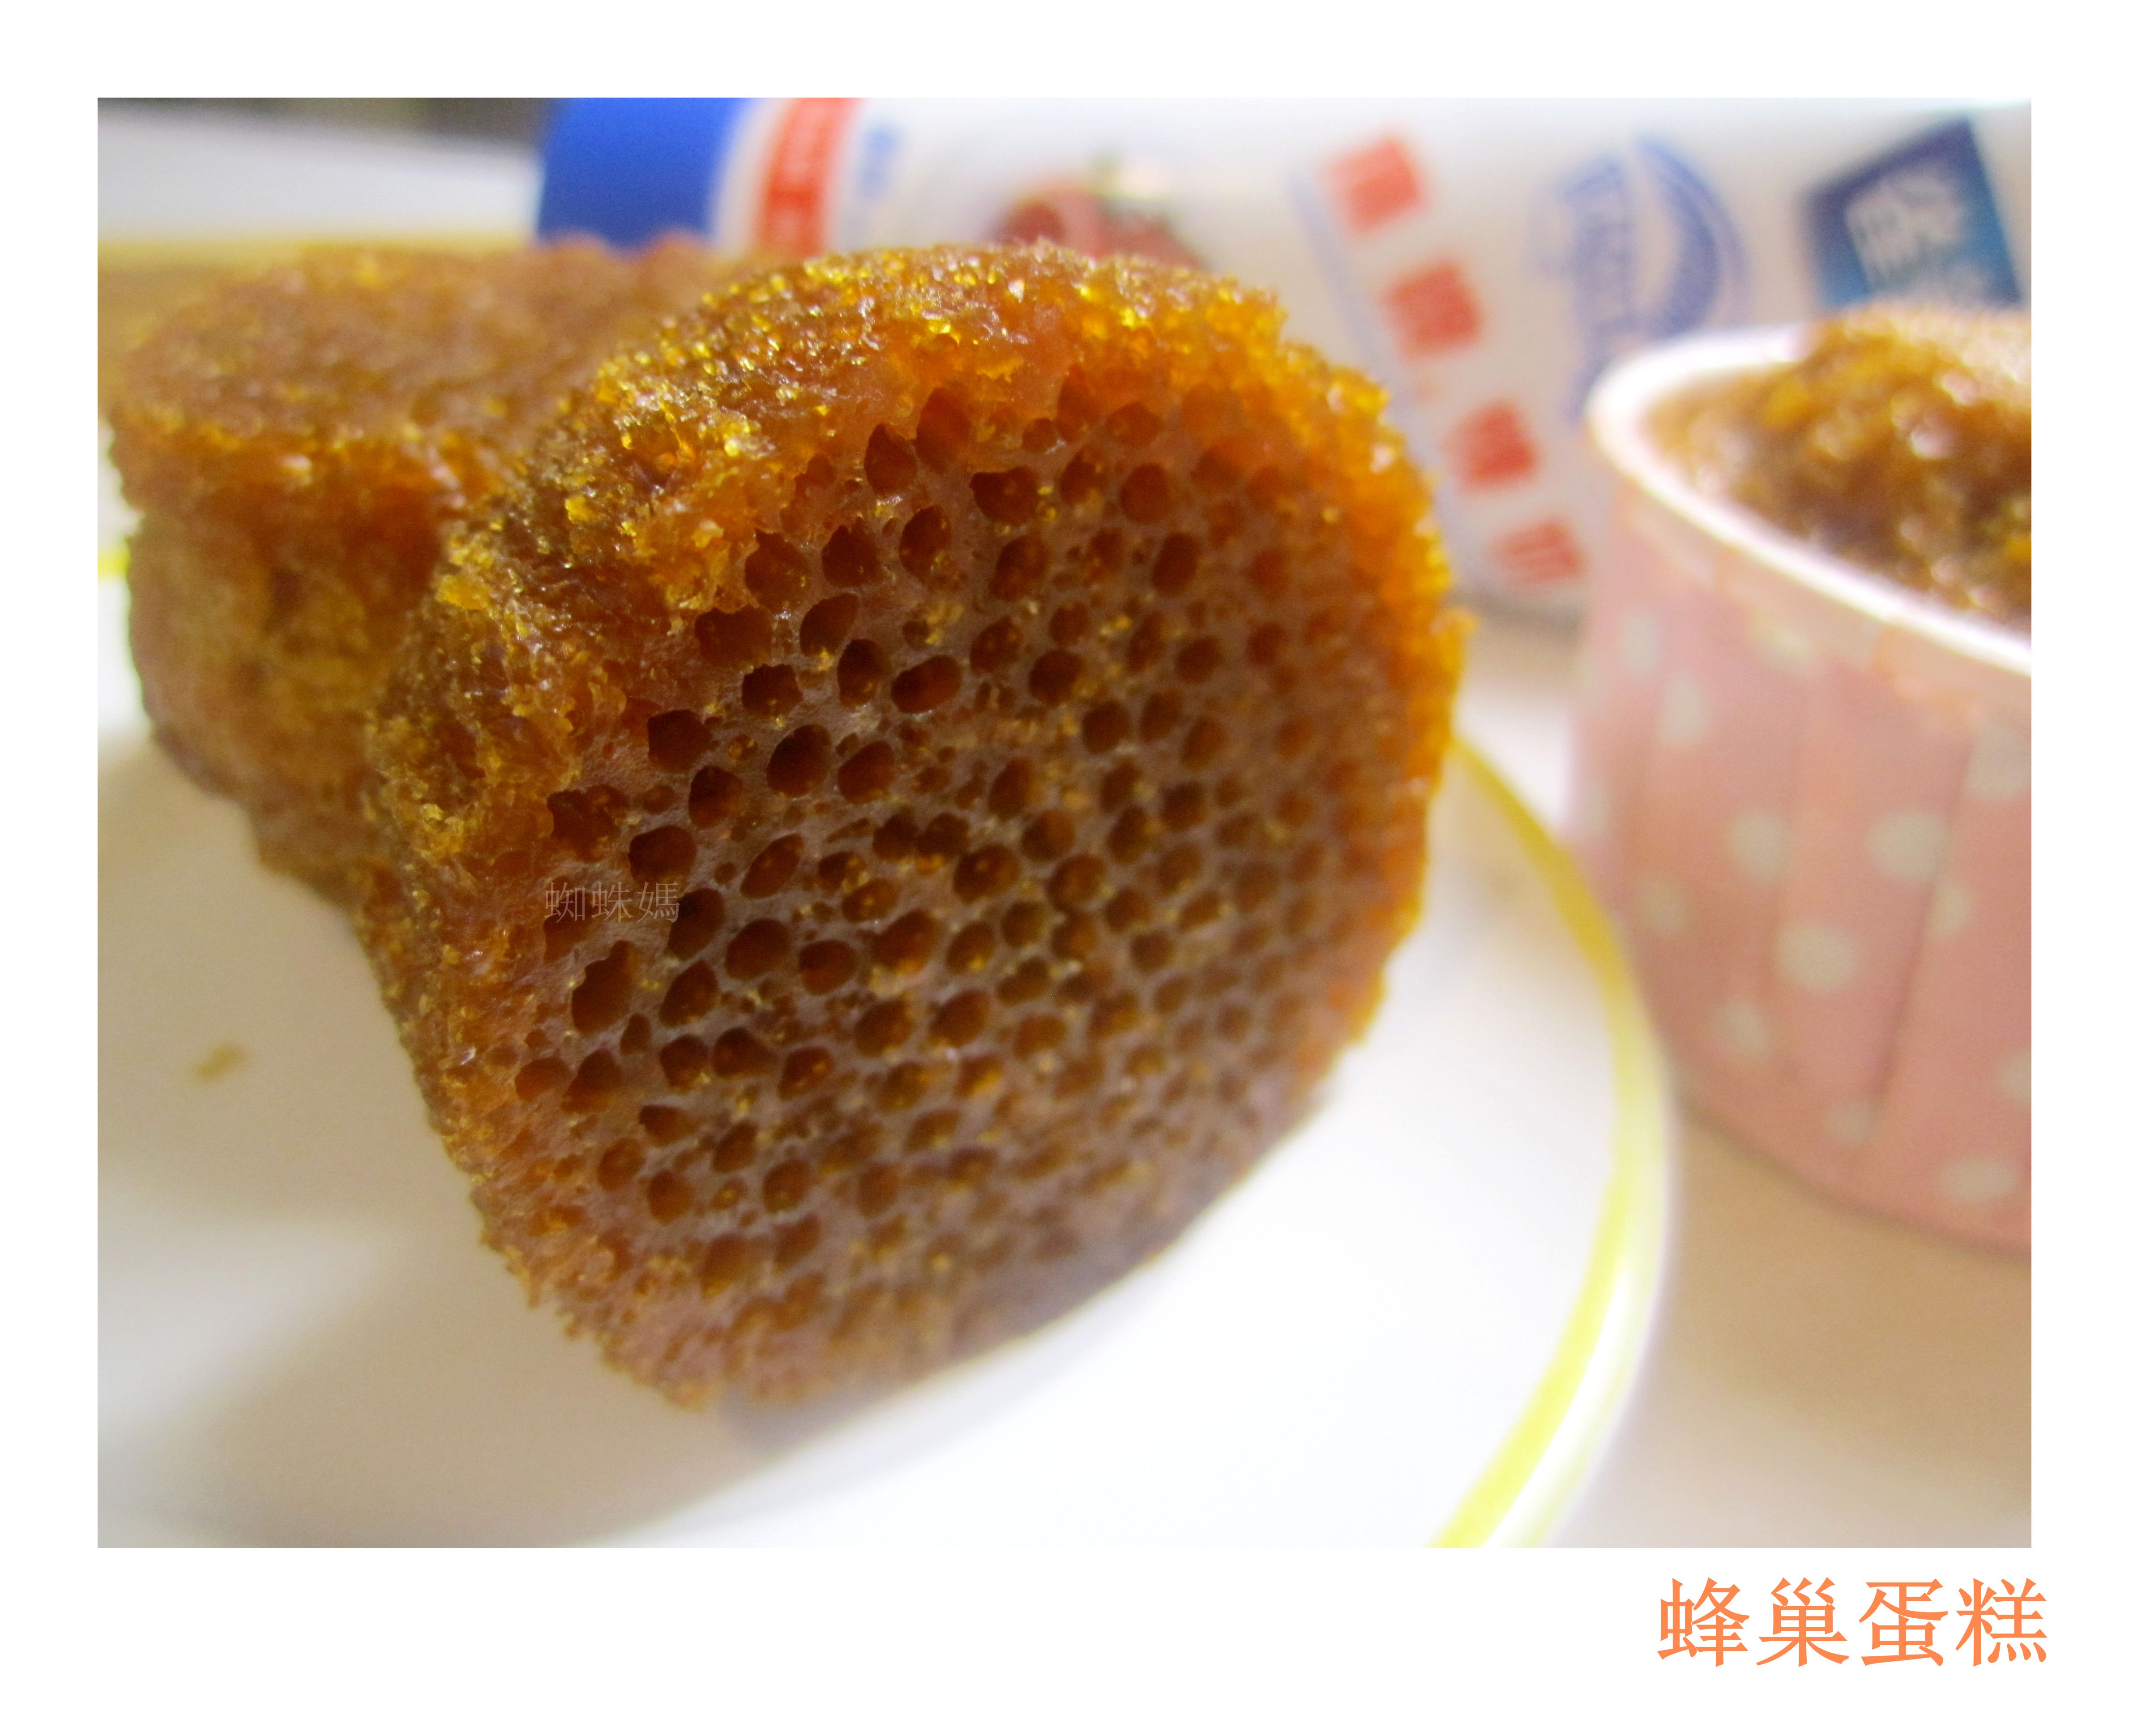 黃比比的美食旅遊紀錄: 可愛的蜂巢蛋糕